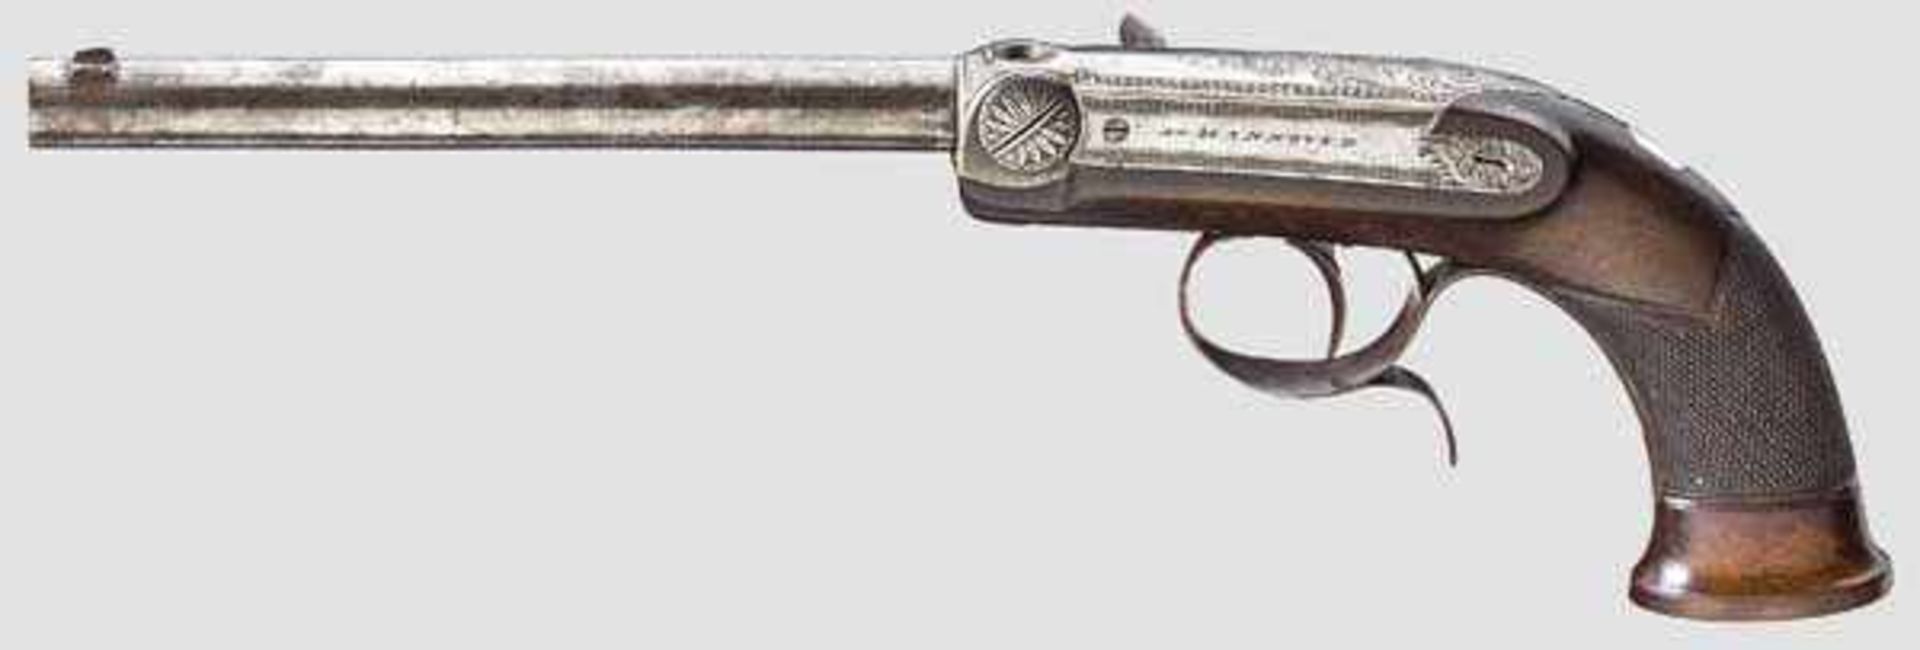 Hinterlader-Perkussionspistole, Tanner, Hannover um 1850/60 Runder und glatter Lauf im Kaliber 7 - Bild 2 aus 3